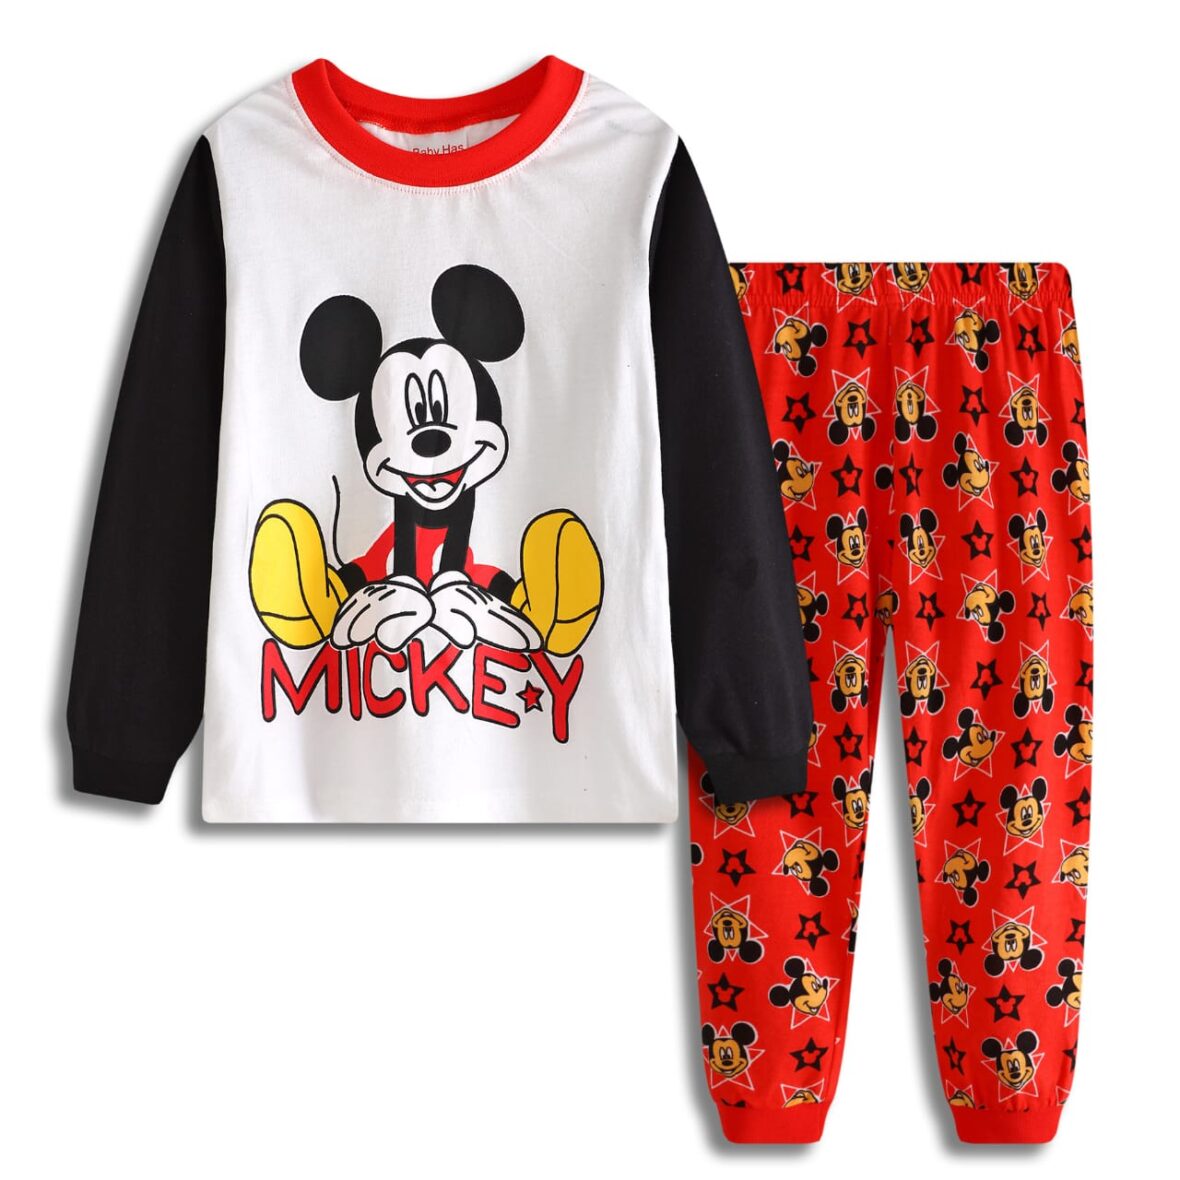 Toddler Mickey Pyjamas, Sleep Wears, Night Waers